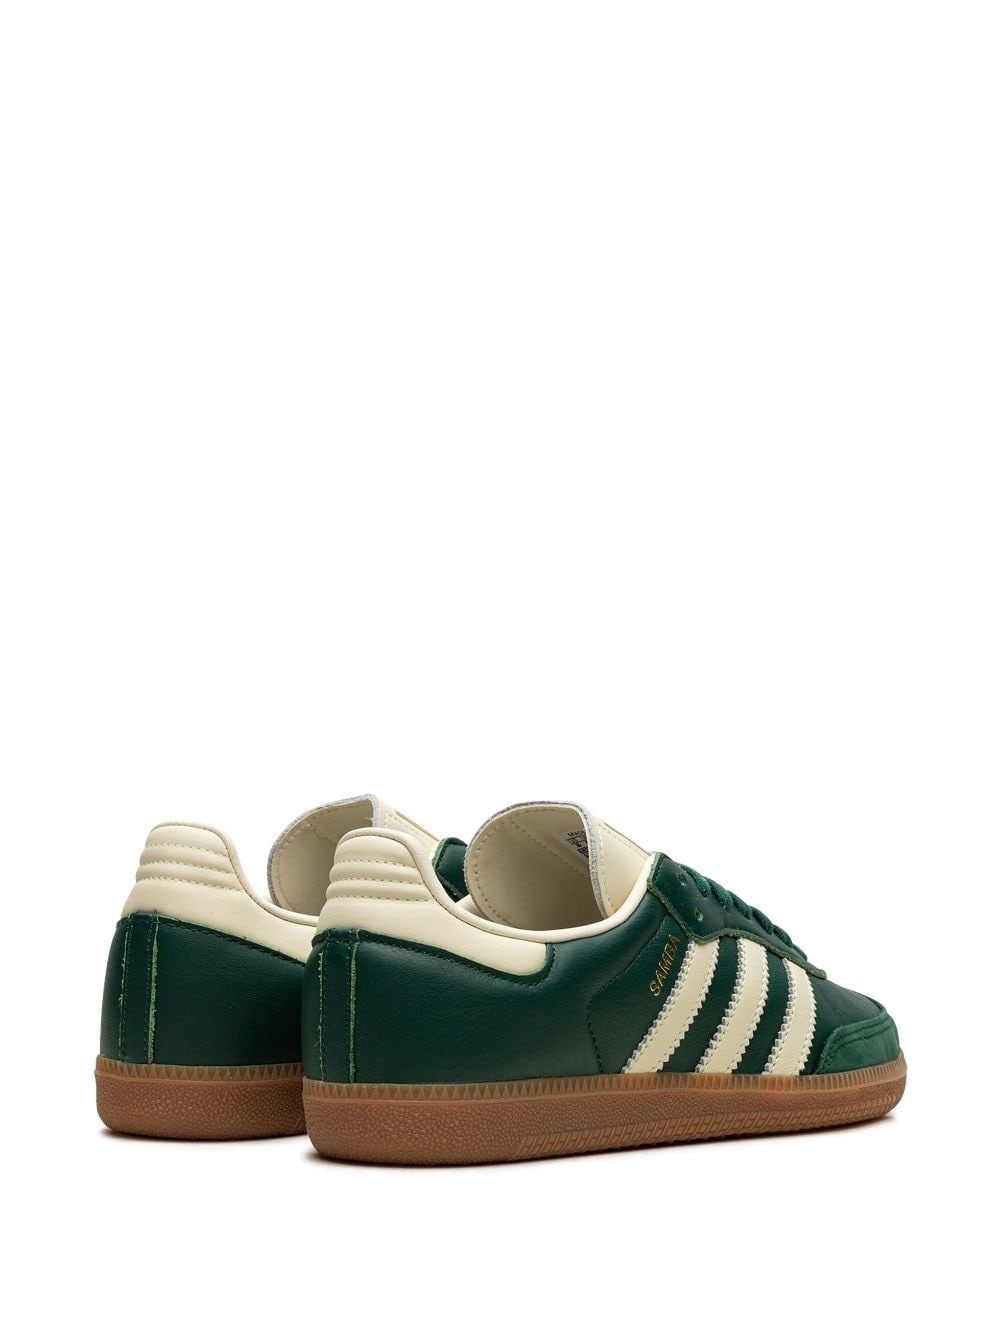 Samba OG "Collegiate Green" sneakers - 3